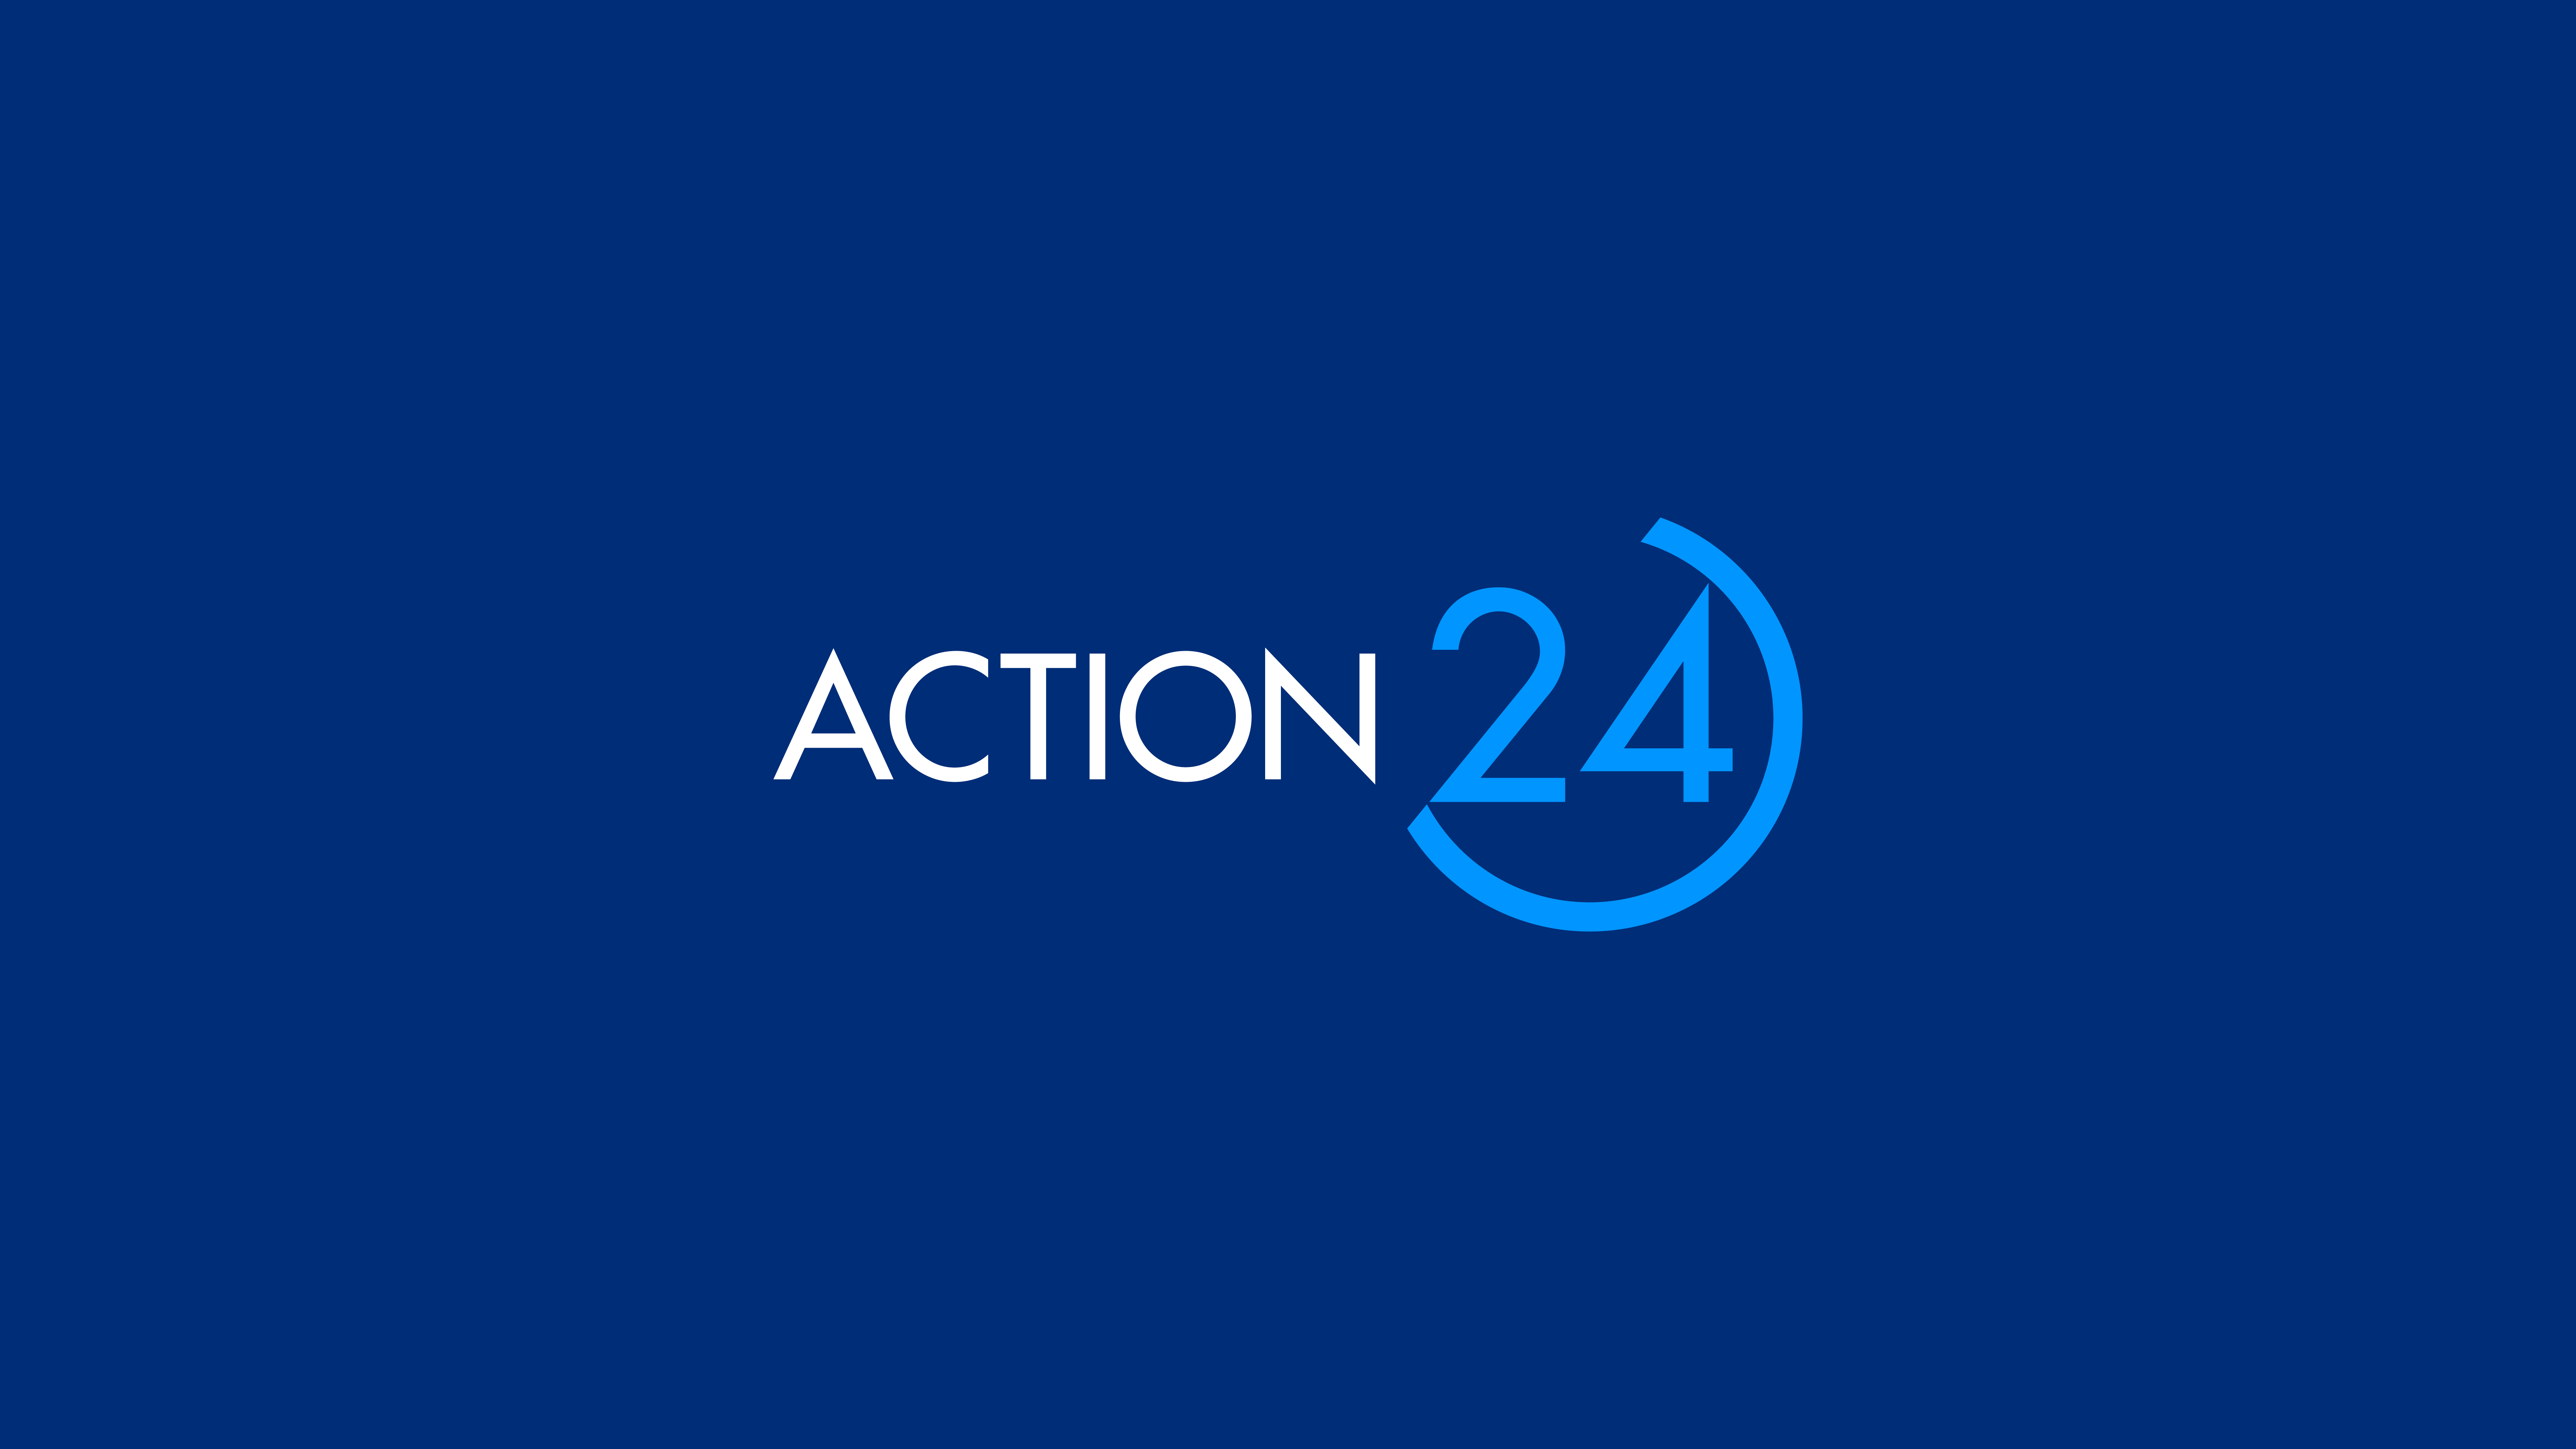 Ο Γρηγόρης Αντωνίου αναλαμβάνει Διευθυντής Marketing του ομίλου ACTION 24